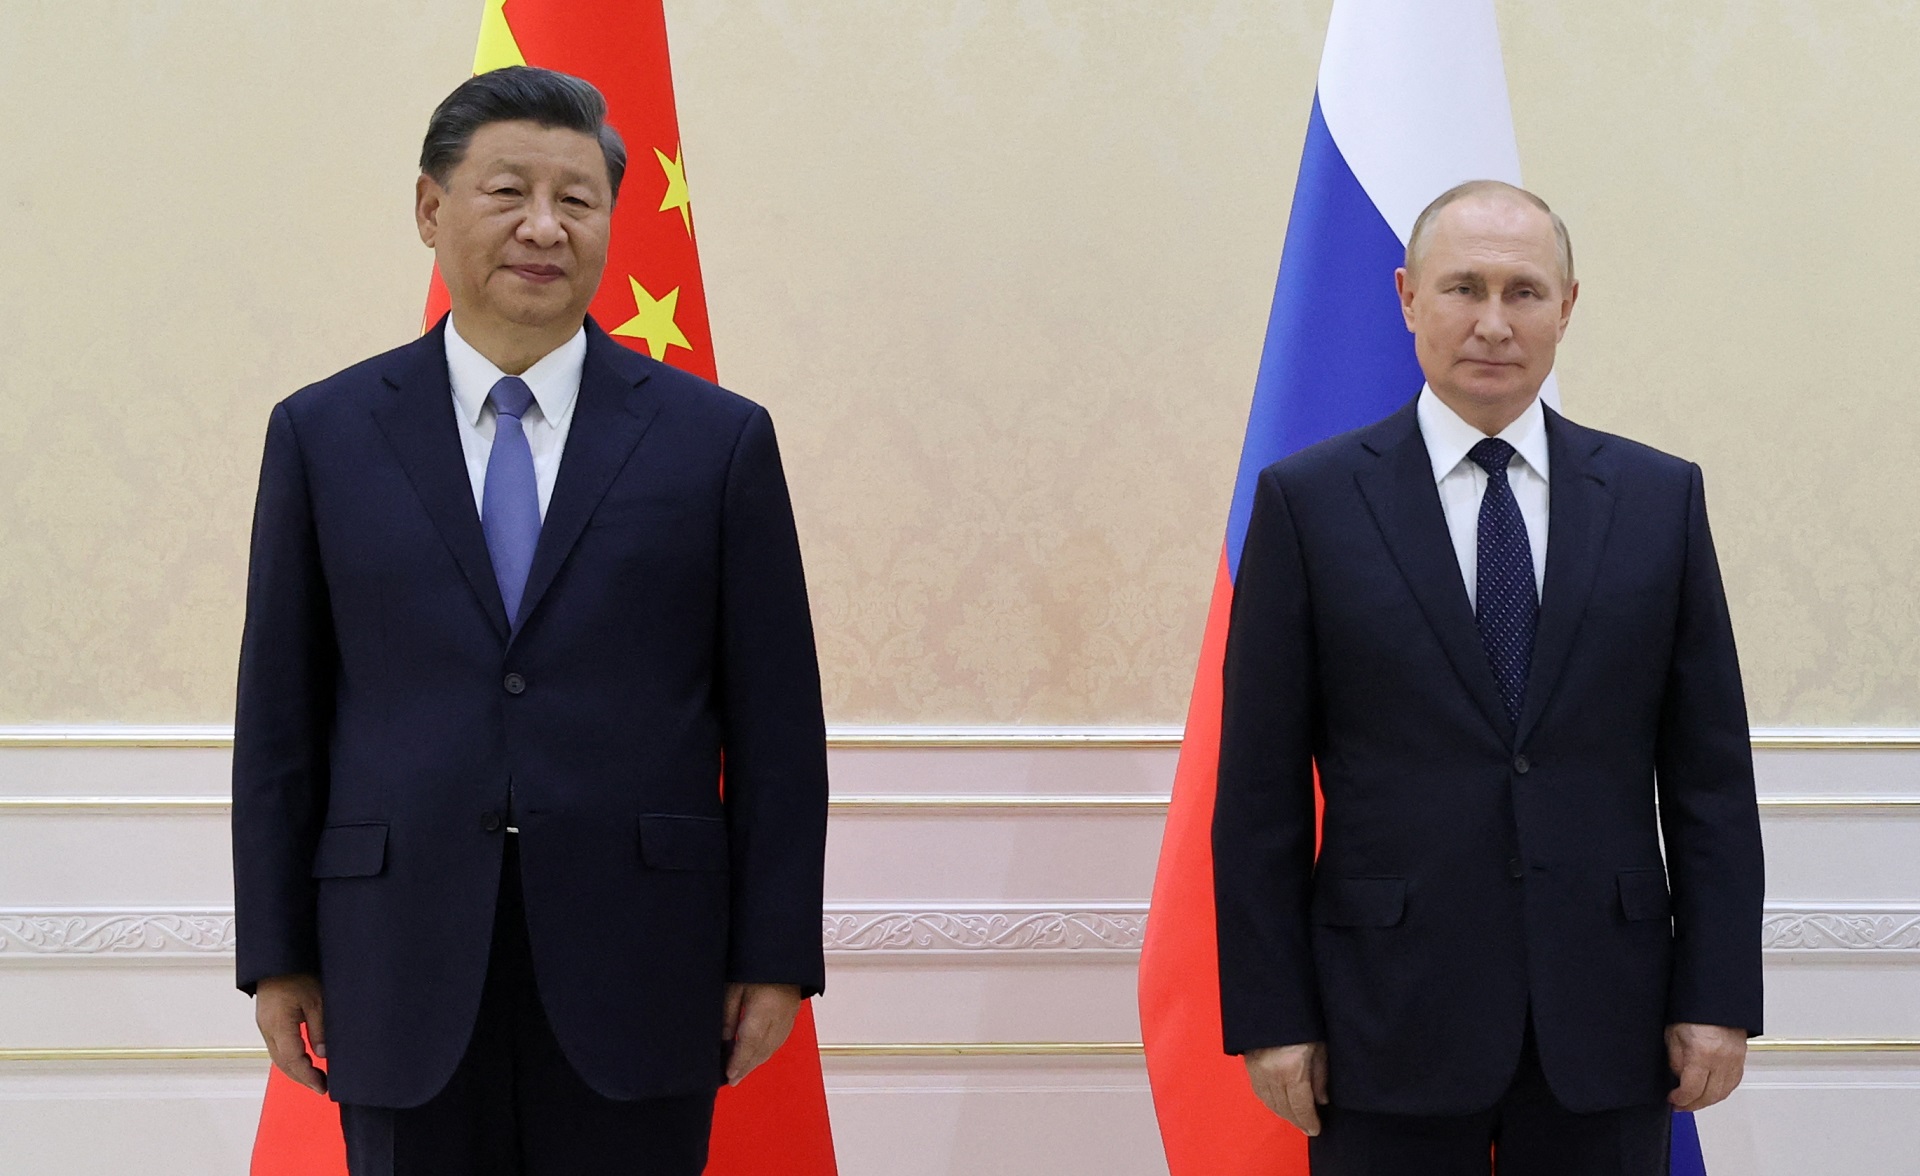 Xi Jinping y Vladímir Putin posan con el presidente de Mongolia durante su reunión trilateral al margen de la cumbre de líderes de la Organización de Cooperación de Shanghái (OCS) en Samarcanda el 15 de septiembre de 2022. (Foto de Alexandr Demyanchuk / SPUTNIK / AFP) Archivo